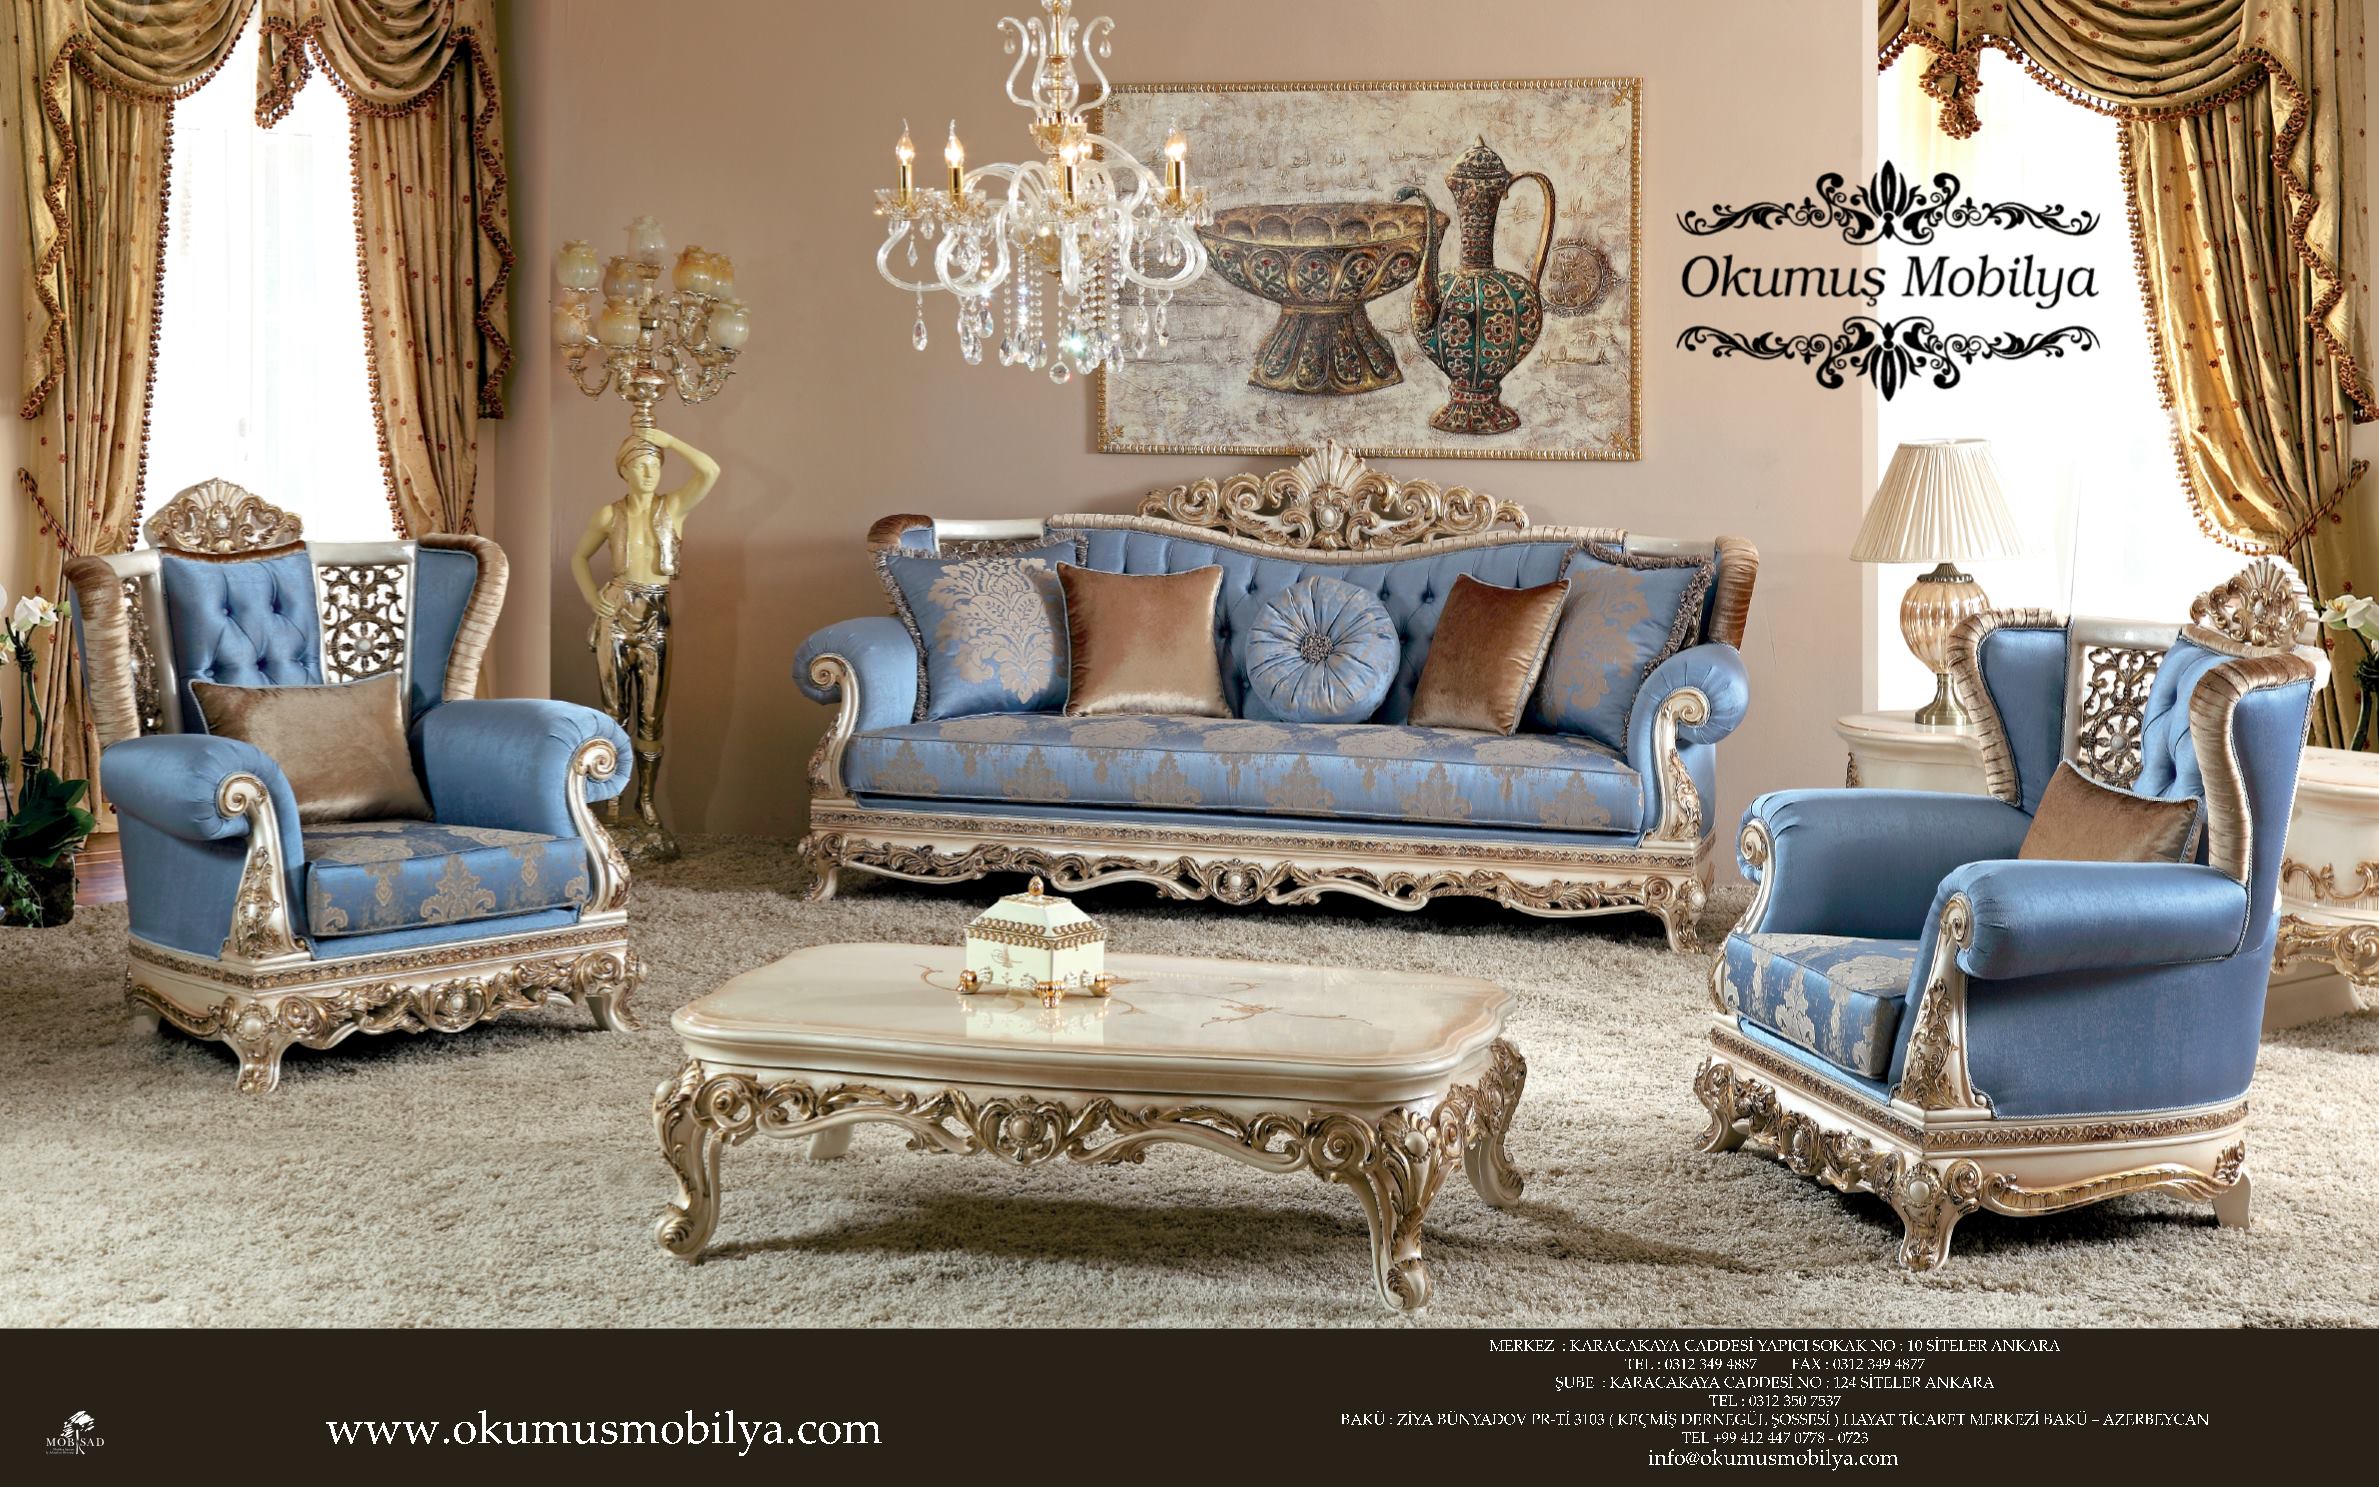 Mobsad Furniture Industry Businessmen Association Home Facebook